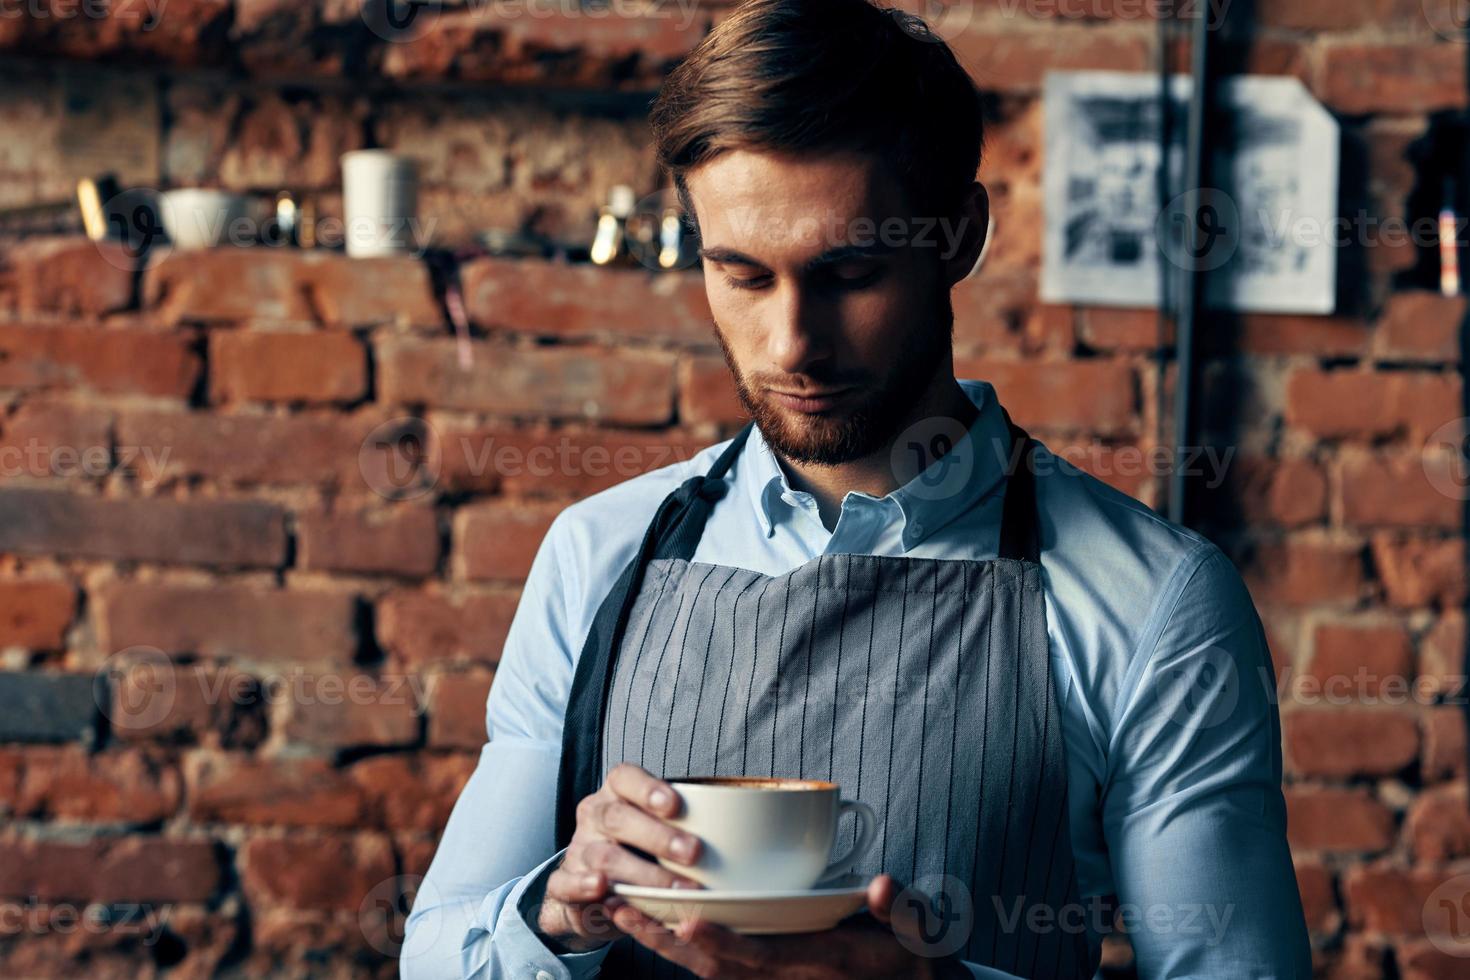 masculino garçom serviço uma copo do café encomenda profissional foto